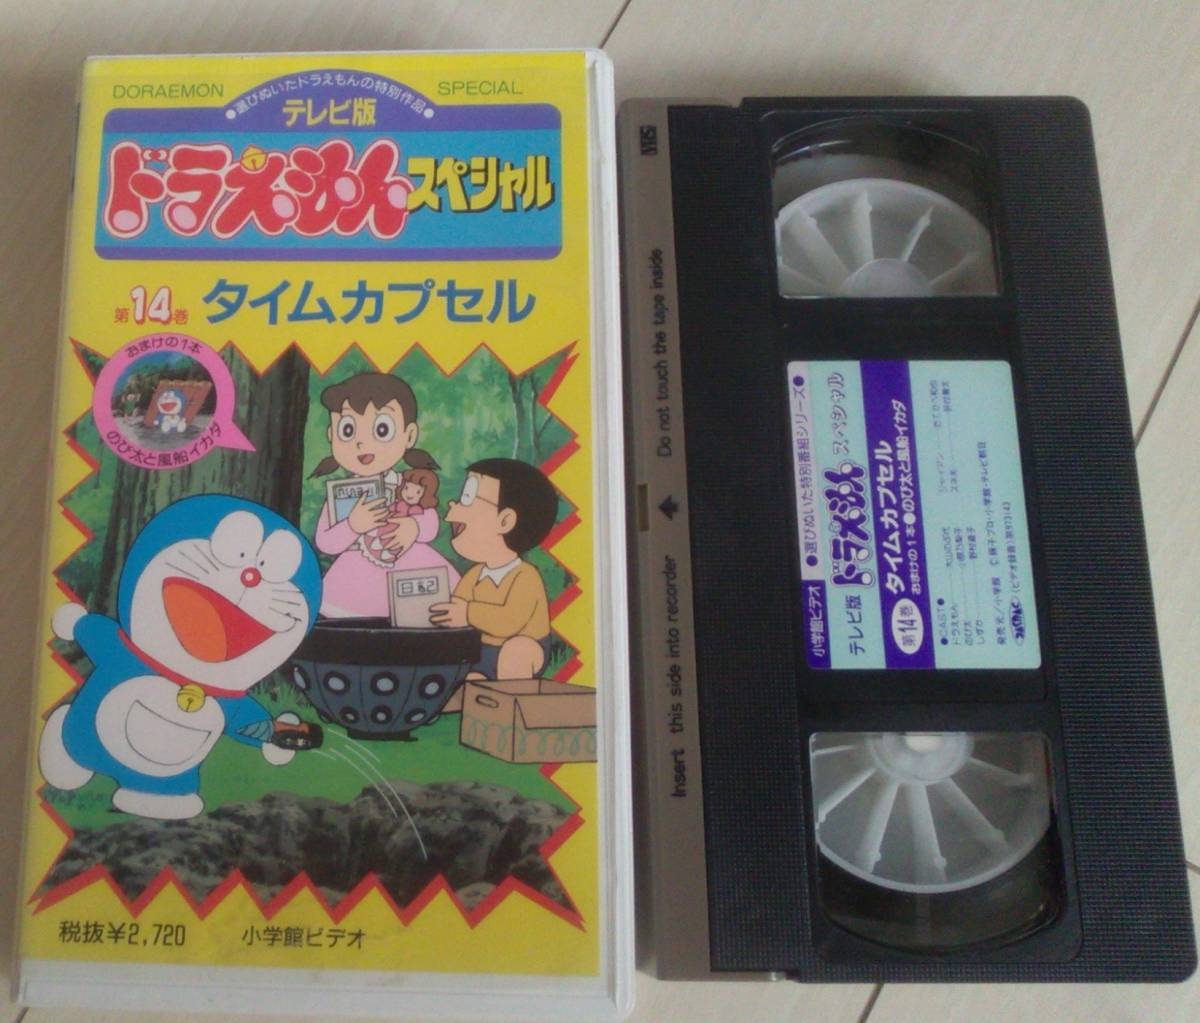 [ анонимность отправка * слежение номер есть ] VHS Doraemon телевизор версия 14 шт специальный время Capsule 